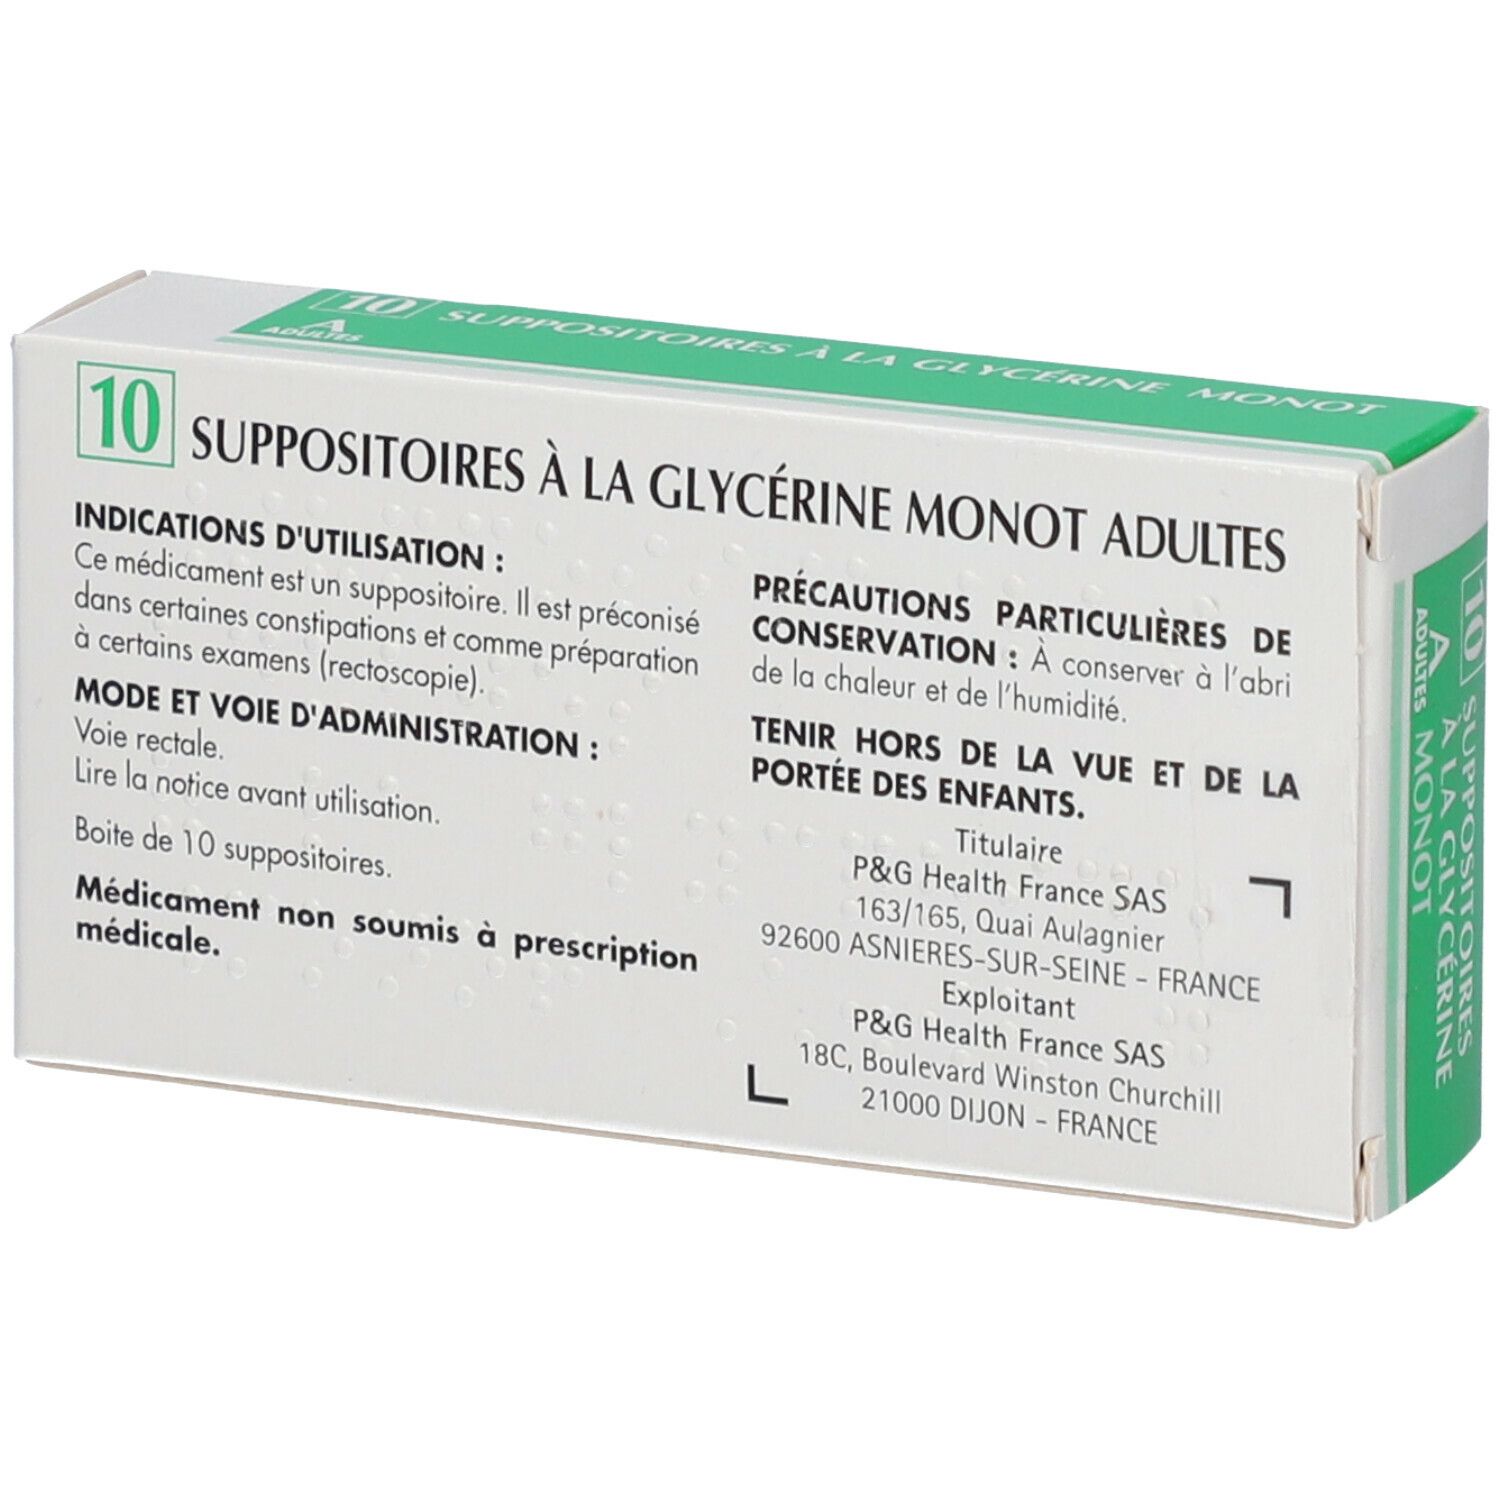 Merck Suppositoires à la Glycérine Monot Adultes